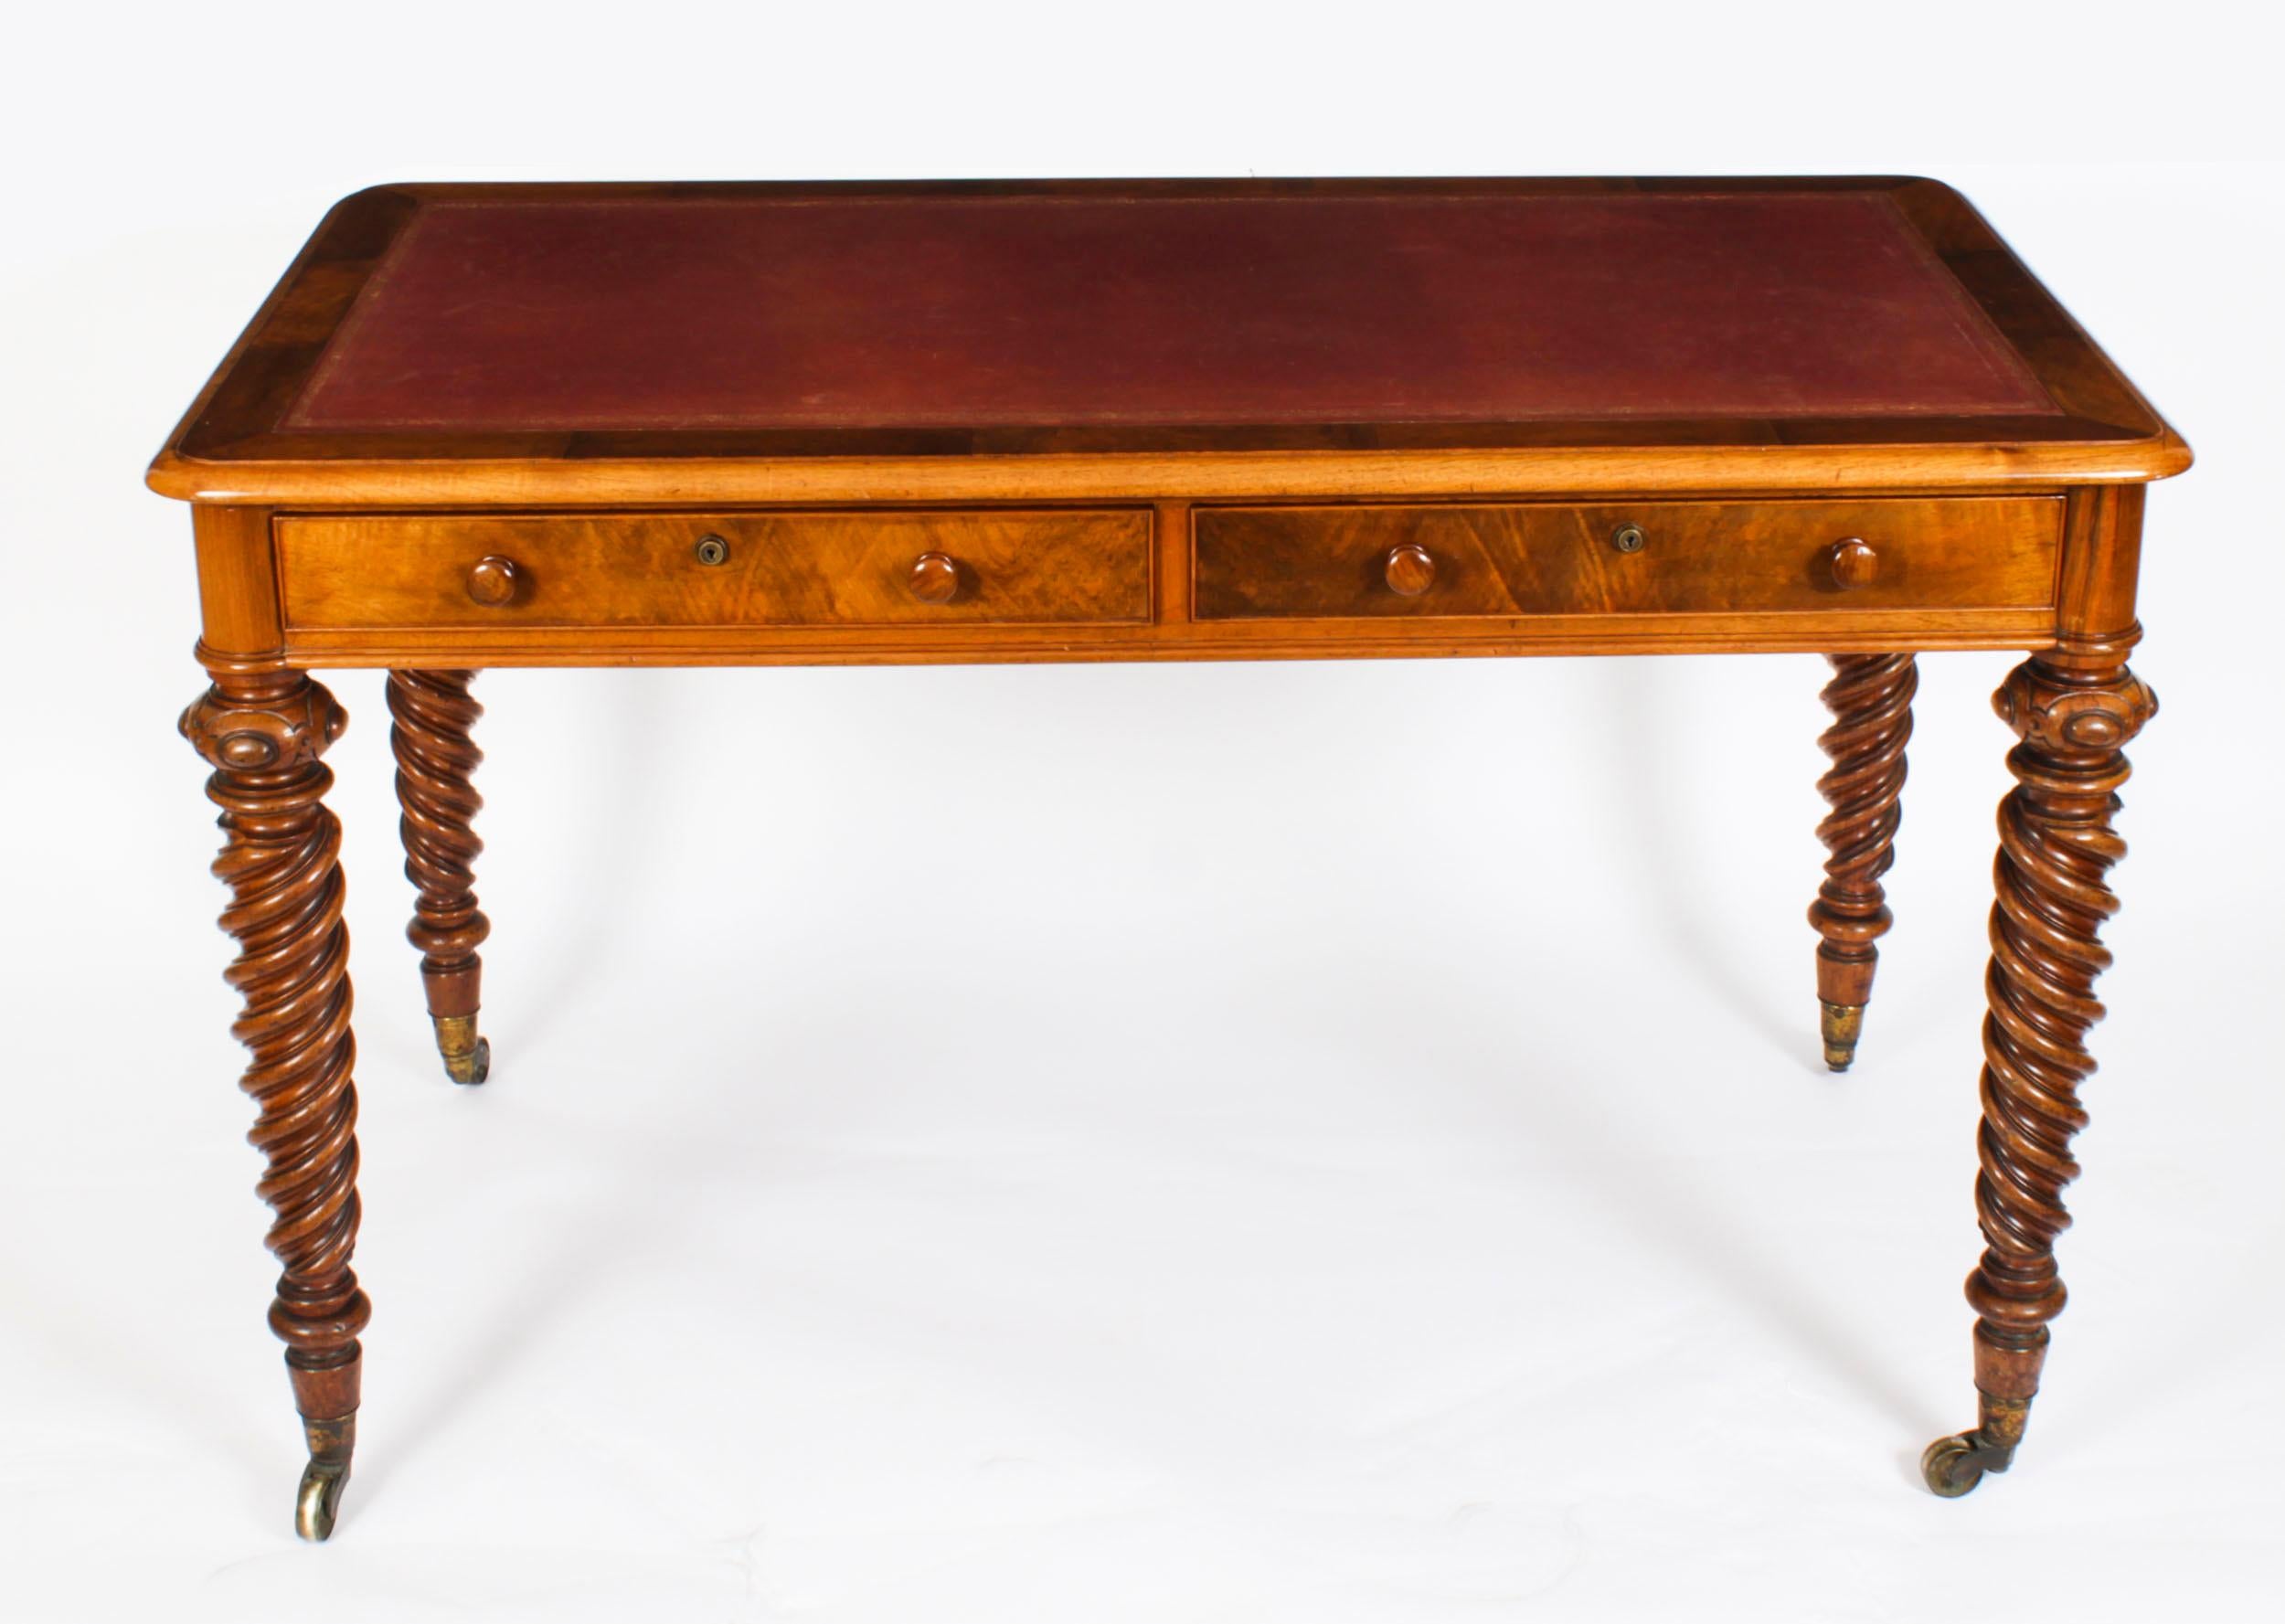 Antiker viktorianischer Schreibtisch aus Nussbaumholz, datiert um 1850.

Eine der Schubladen ist vom Hersteller gestempelt:

C.Hindley & Sons, zuletzt Miles & Edwards, 134 Oxford Street, London.
Es trägt die Inventarnummer 12451

Die rechteckige